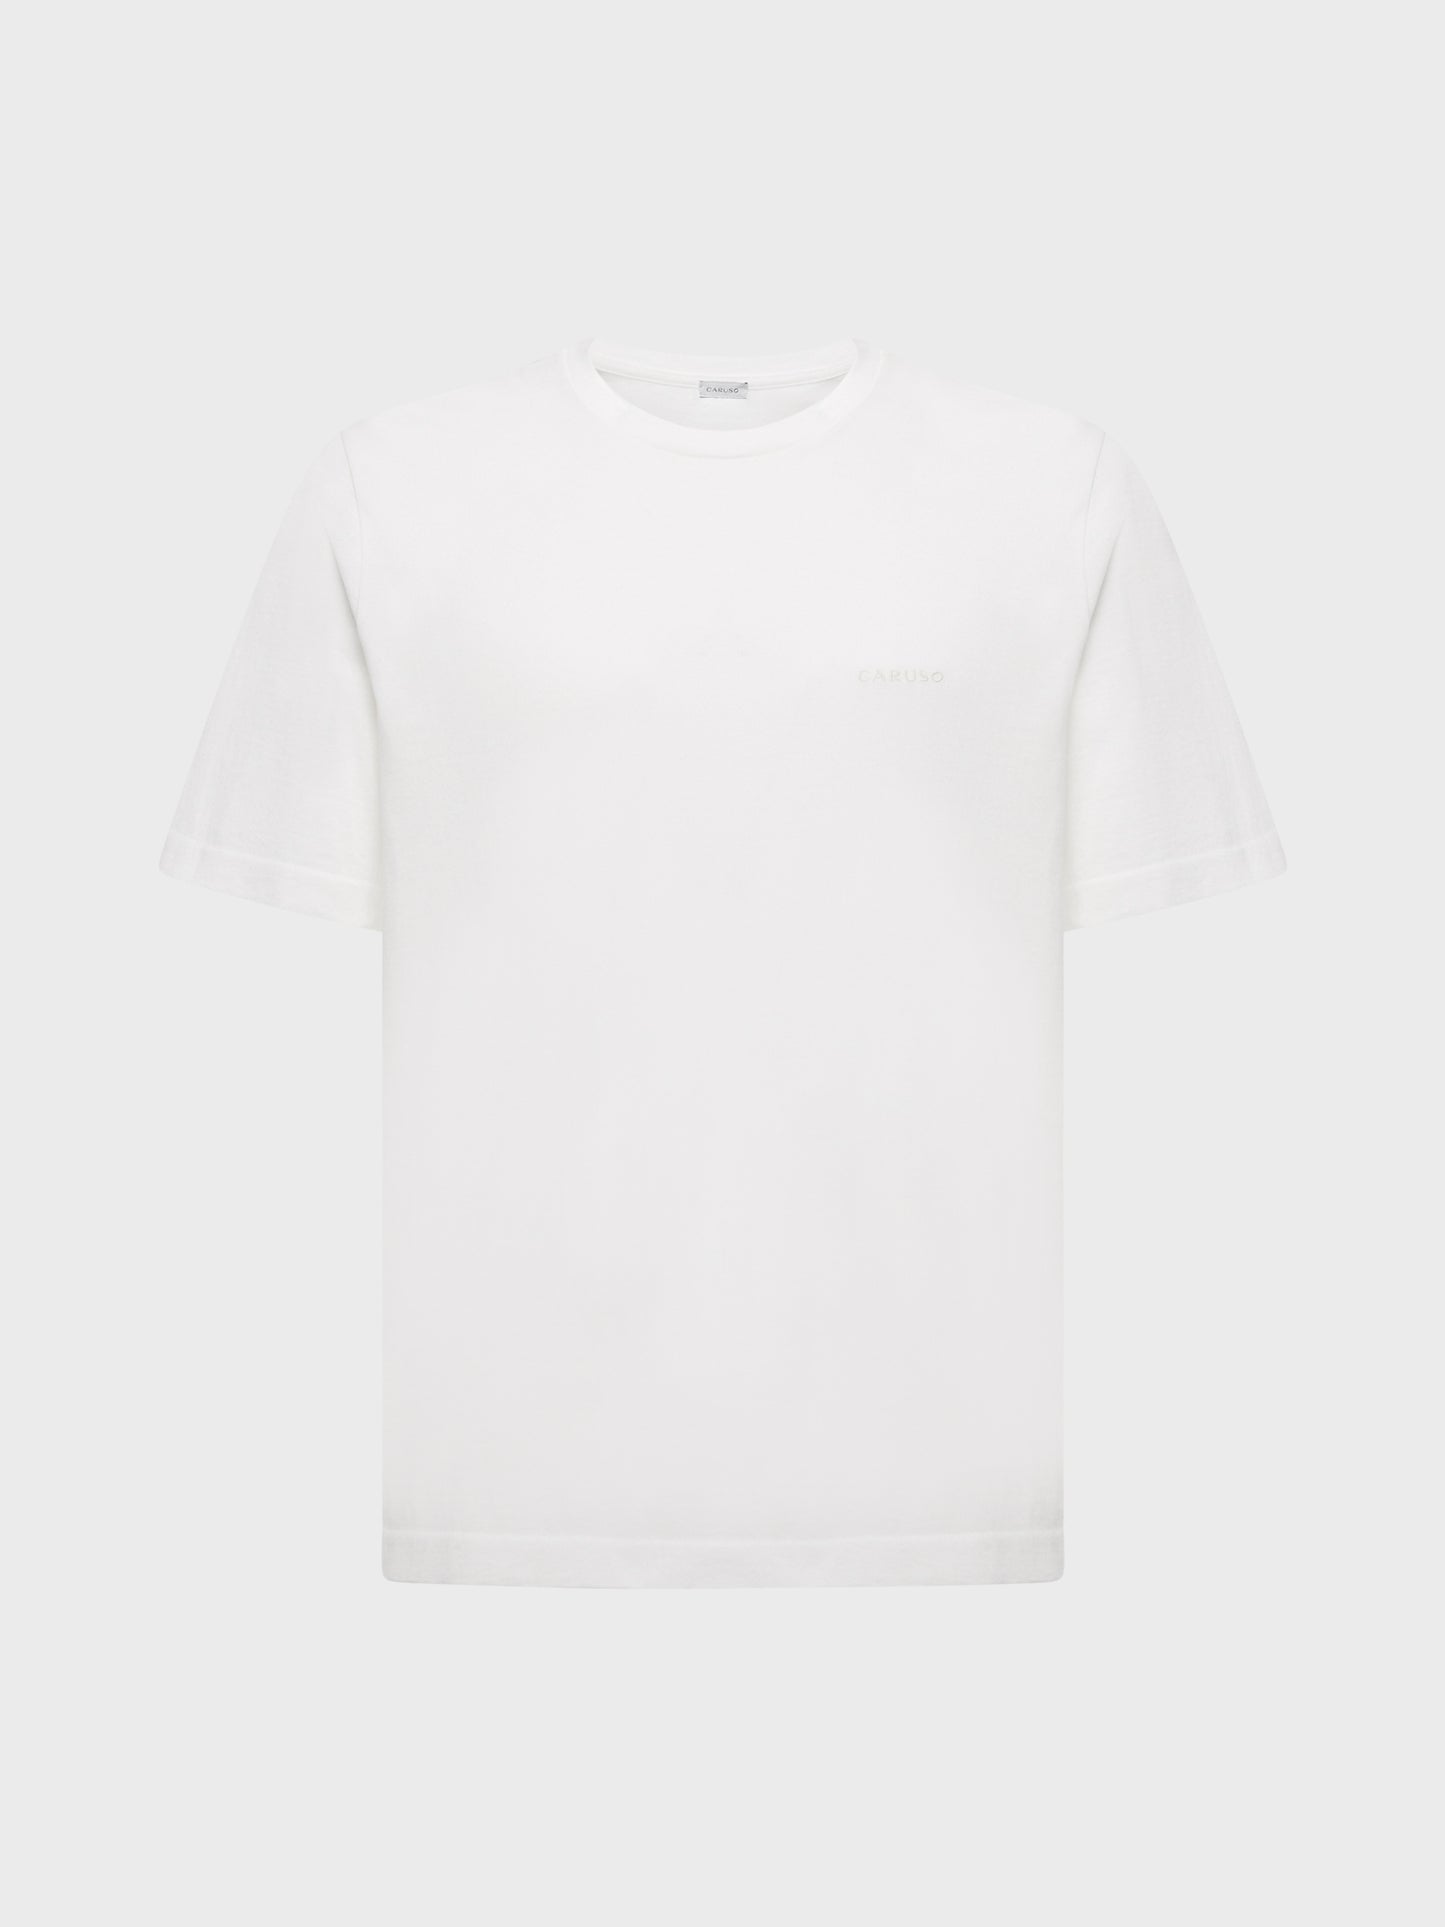 Caruso Menswear Abbigliamento Uomo T-Shirt girocollo seamless in jersey bianco still